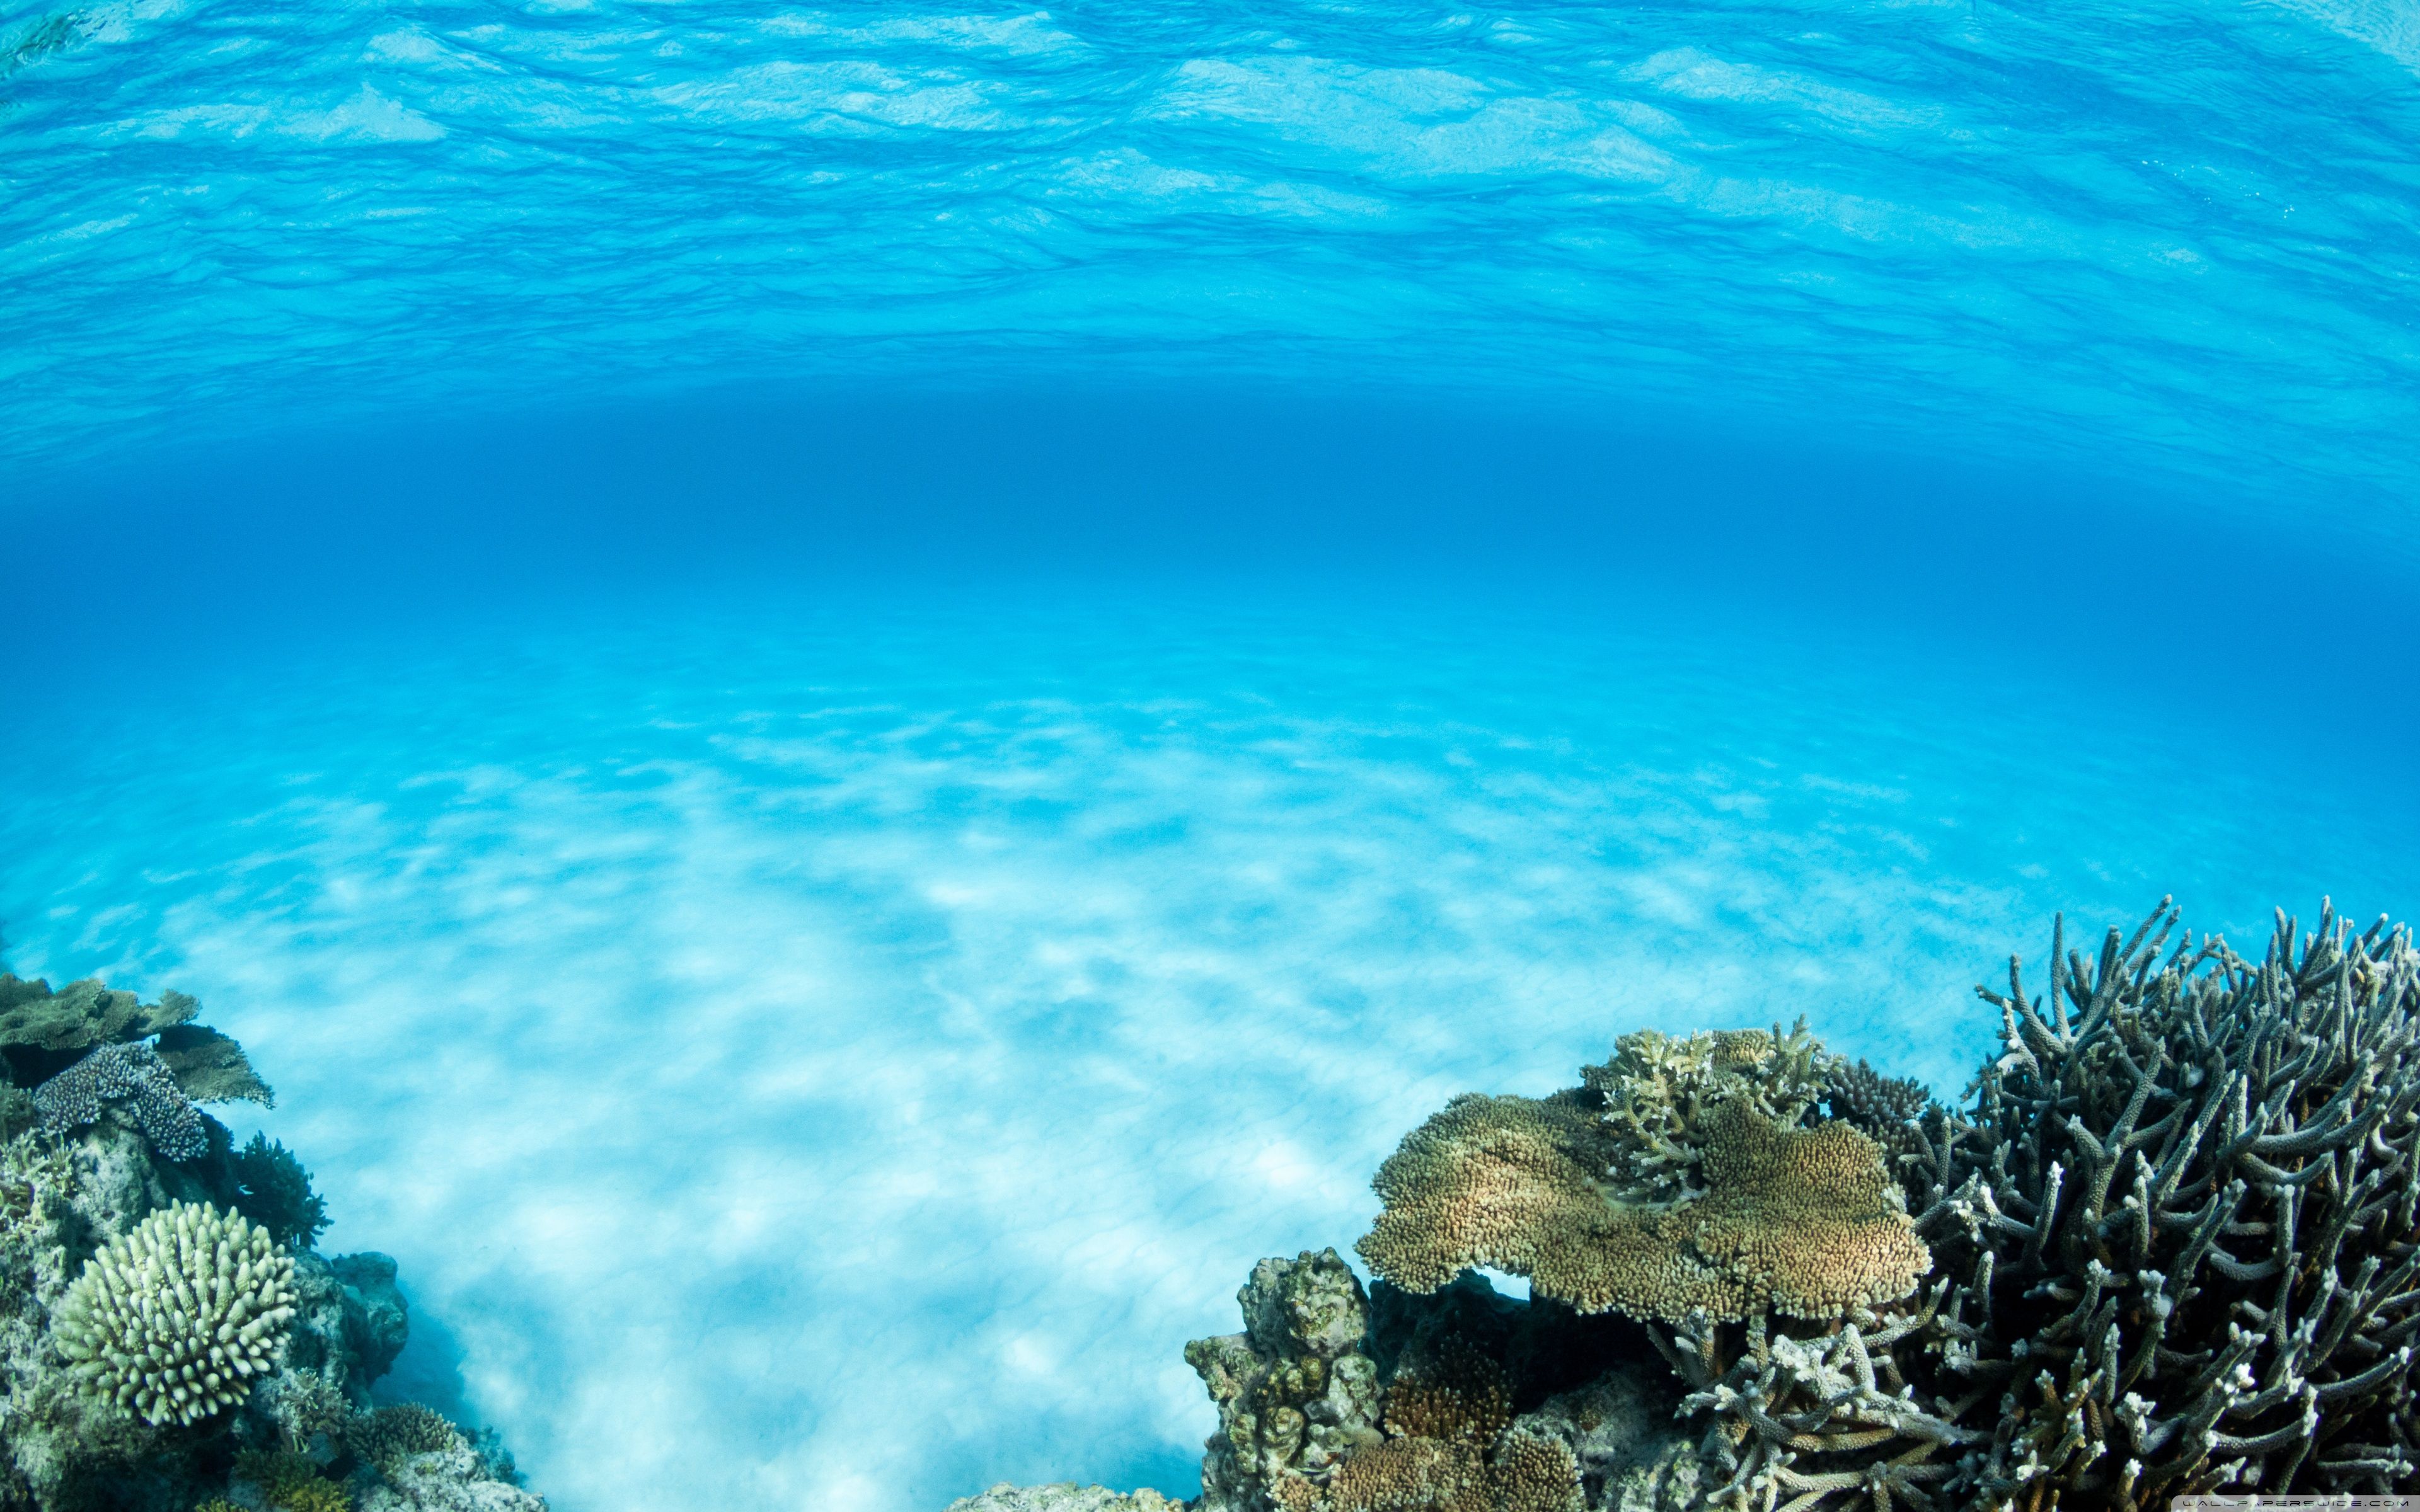 A coral reef in the ocean - Underwater